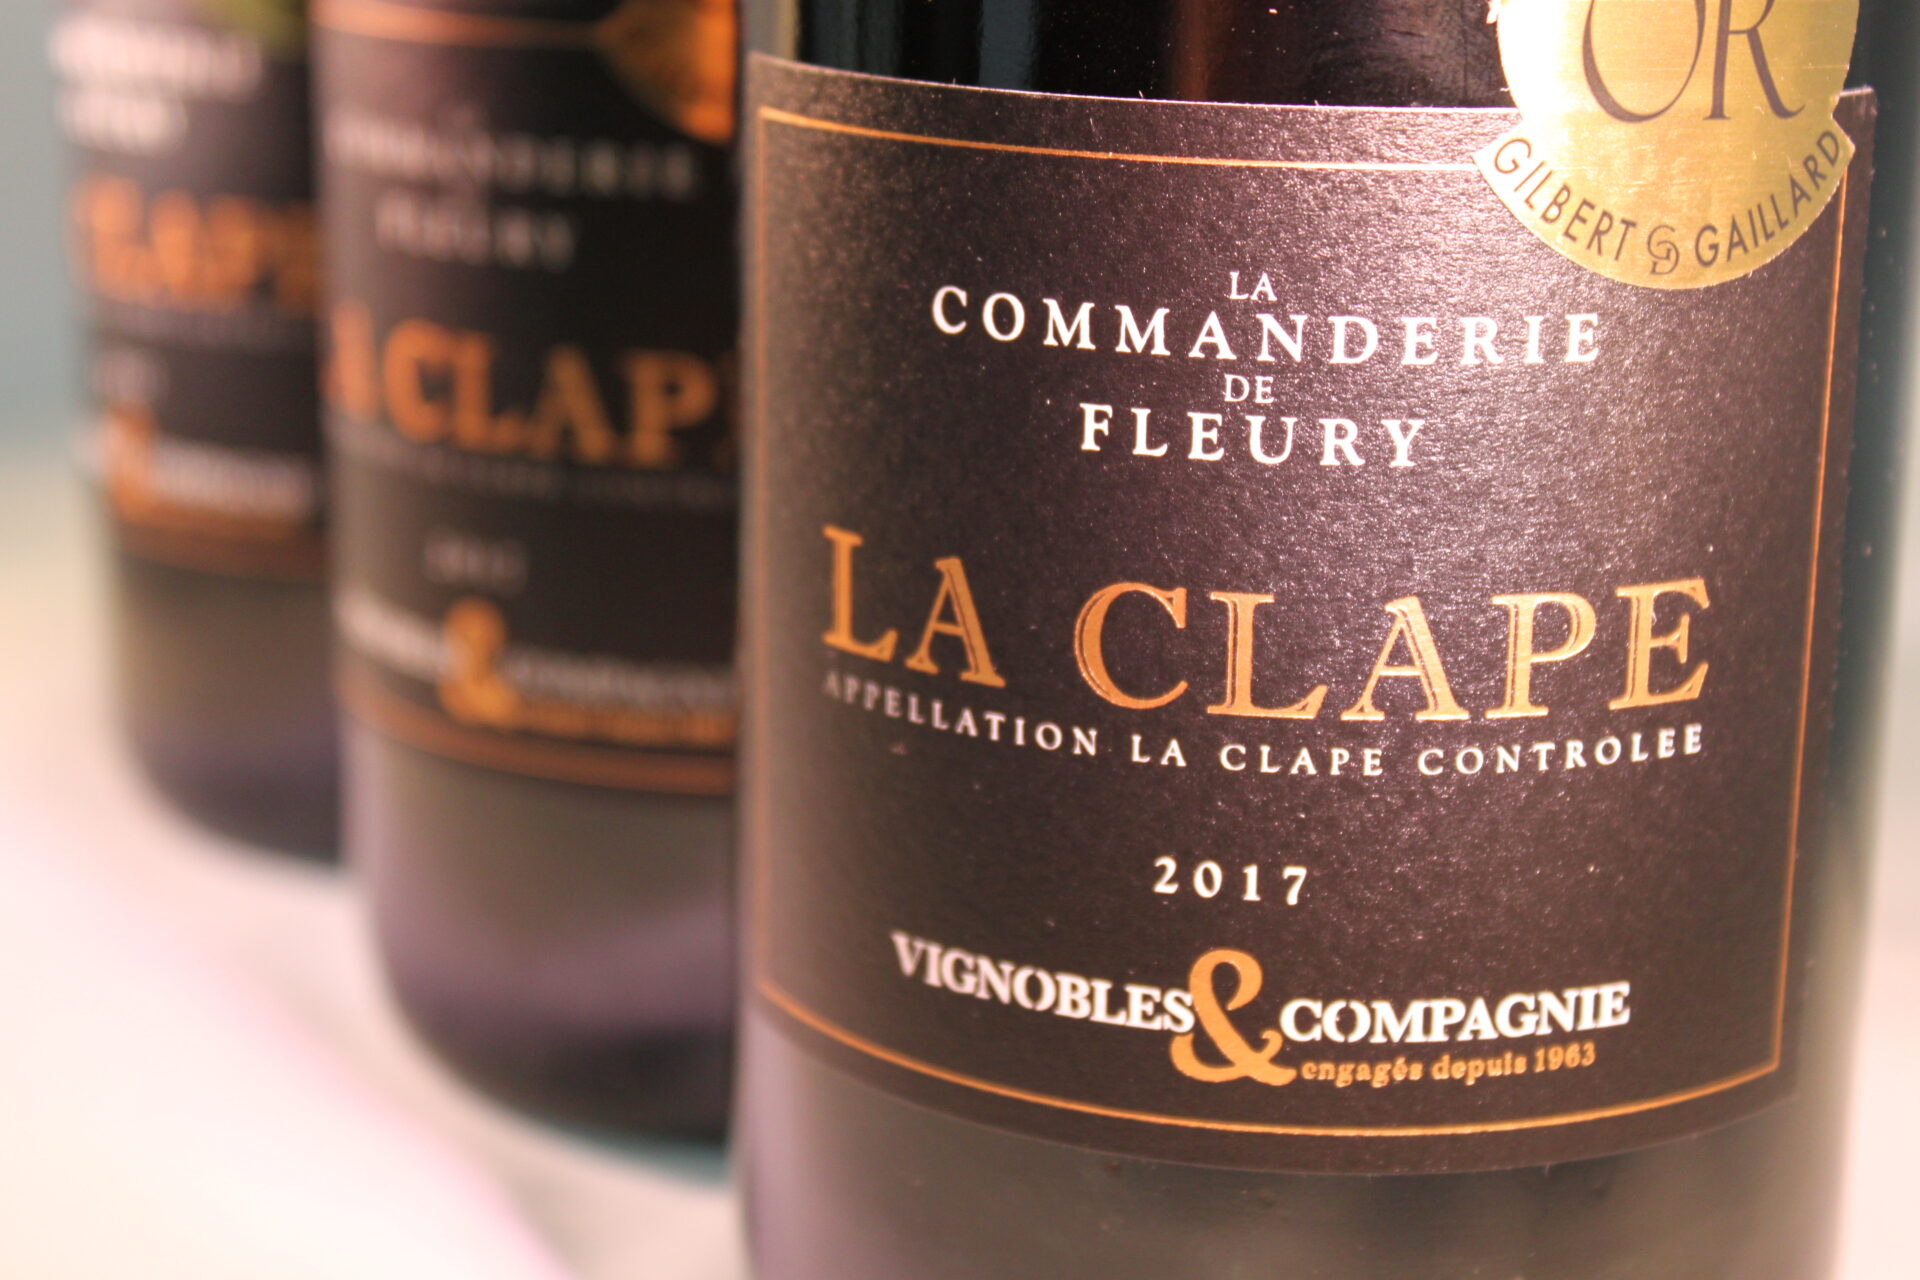 champagne en wijnen de blender La Clape Rouge